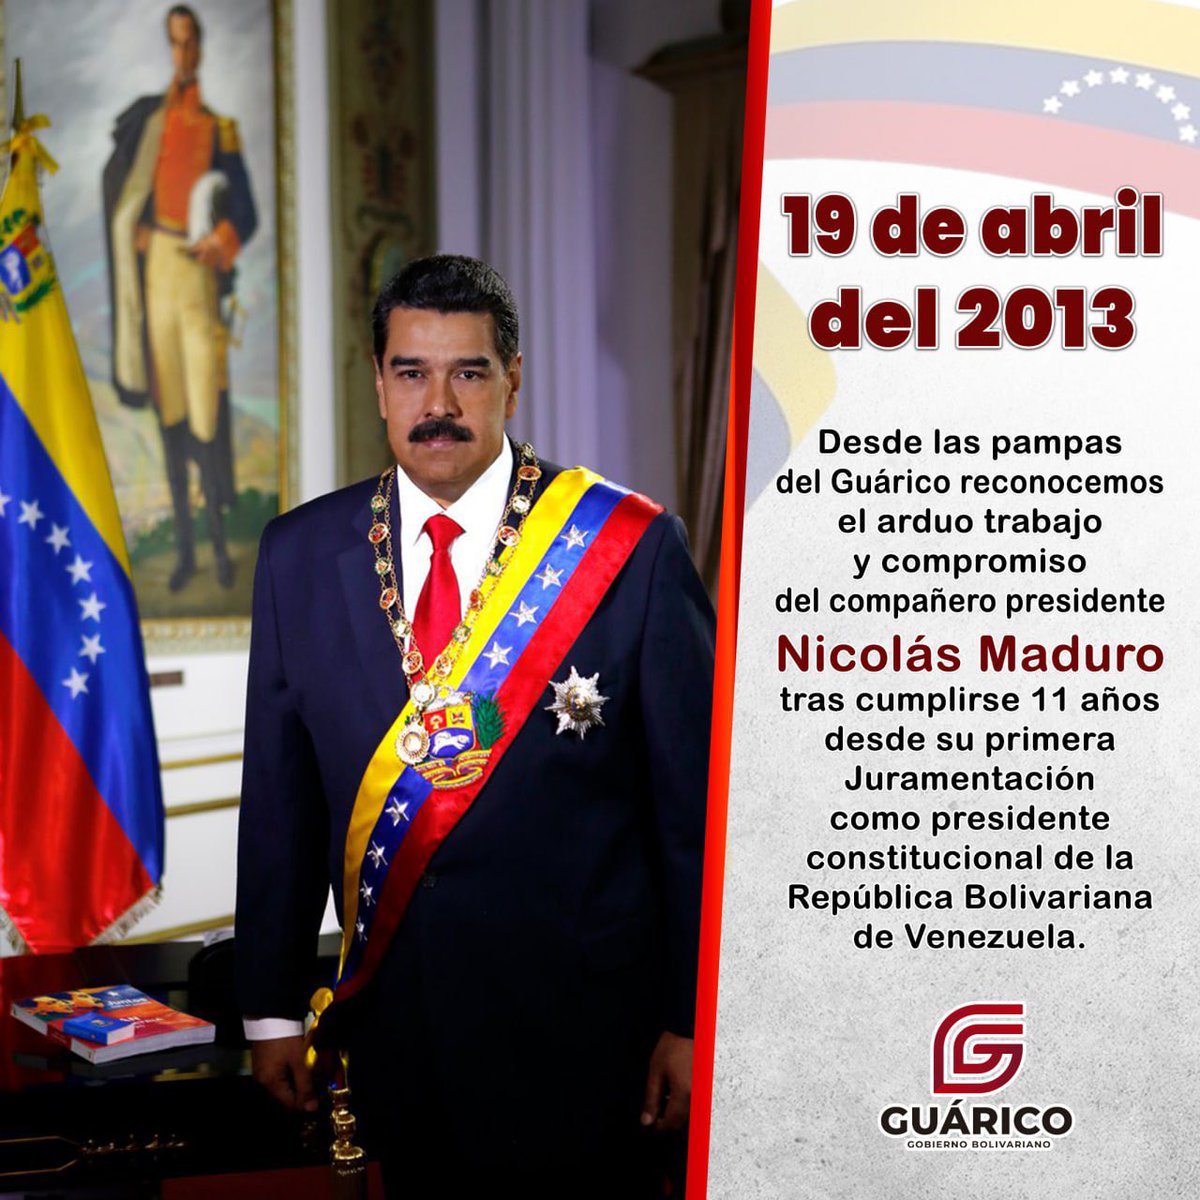 Desde las tierras guariqueñas felicitamos al Presidente @NicolasMaduro, por el trabajo incansable que ha venido realizando en pro de seguir consolidando la Revolución Bolivariana, tras cumplirse 11 años de su primera juramentación. ¡Cuente usted con el pueblo guariqueño!